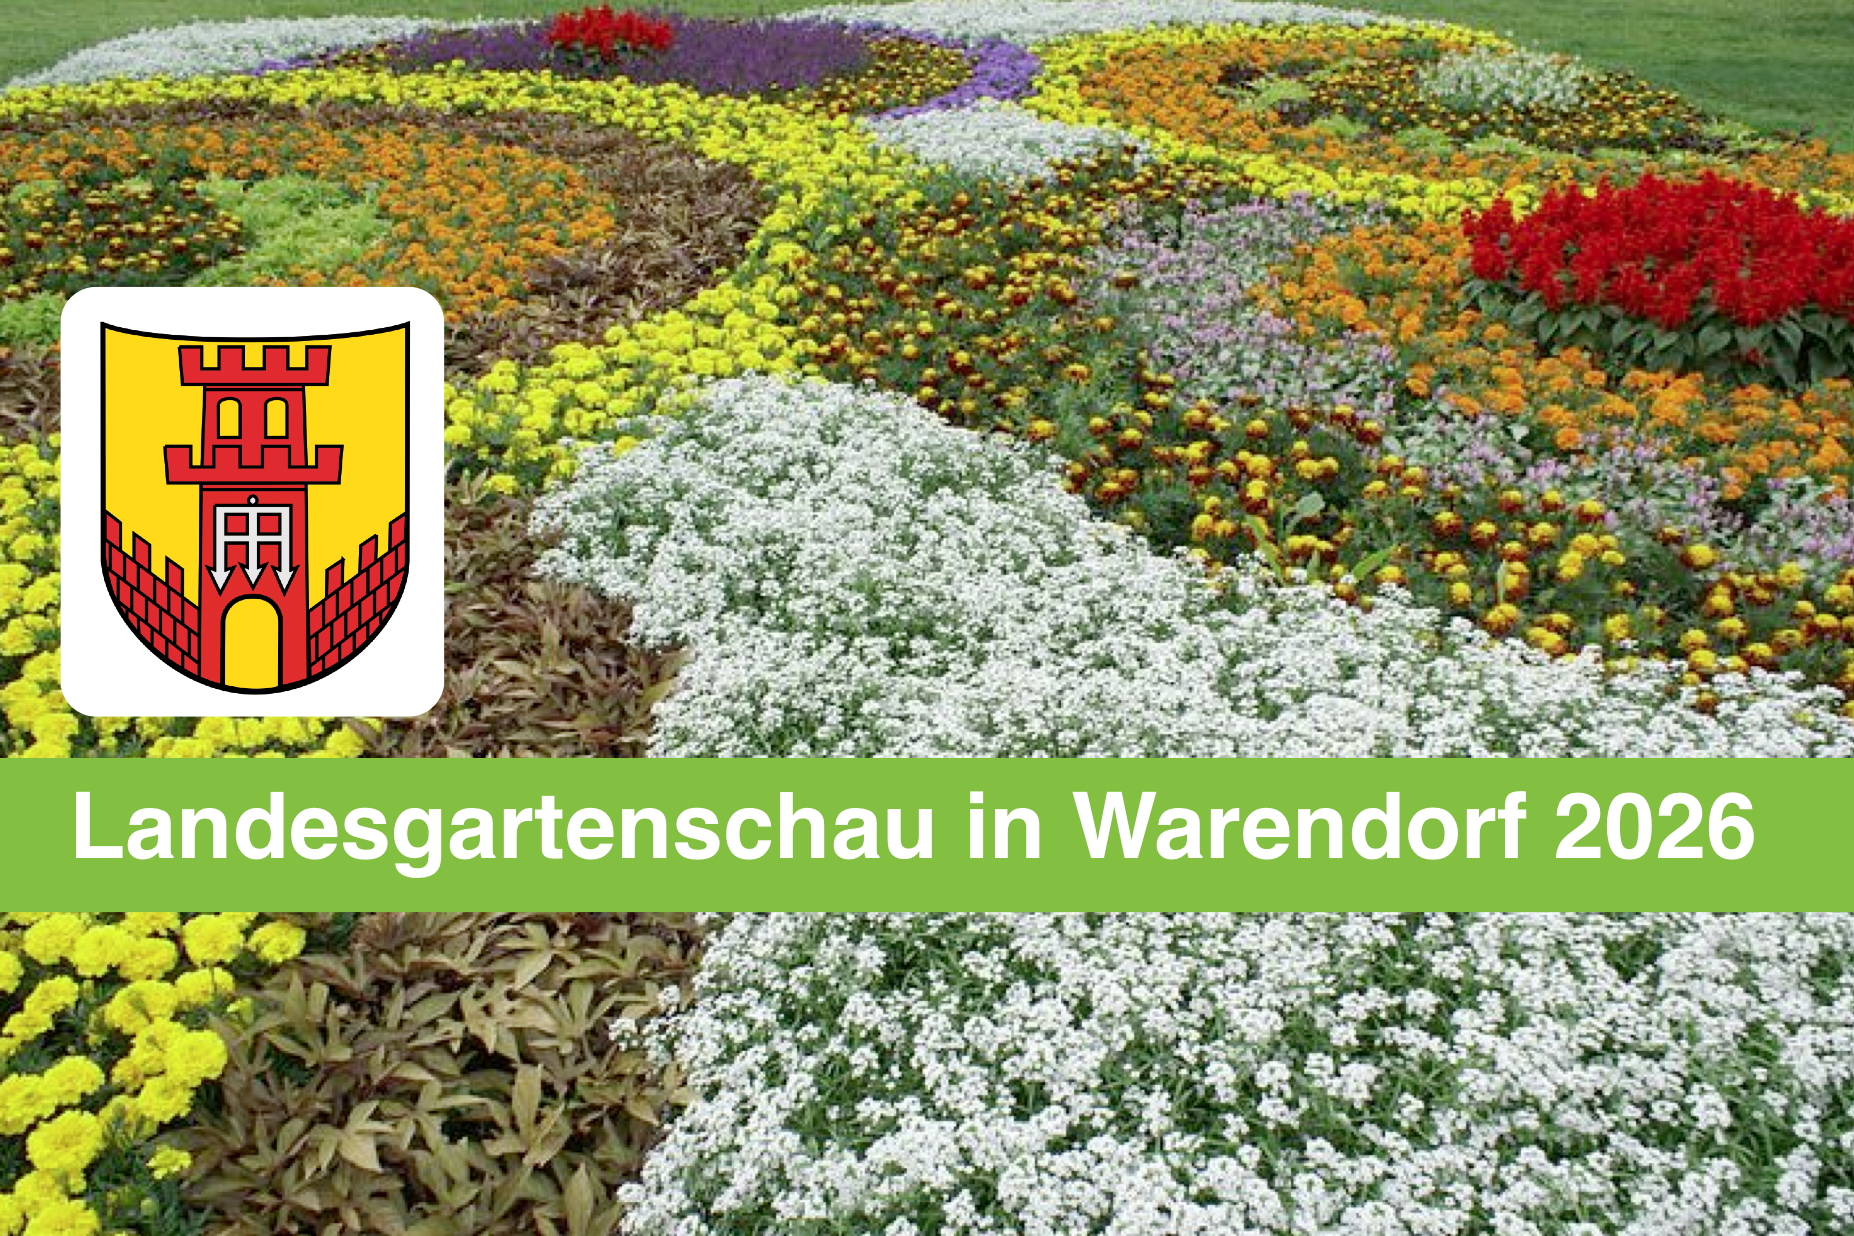 CDU-Fraktion begrüßt Prüfung der Bewerbung einer Landesgartenschau in Warendorf